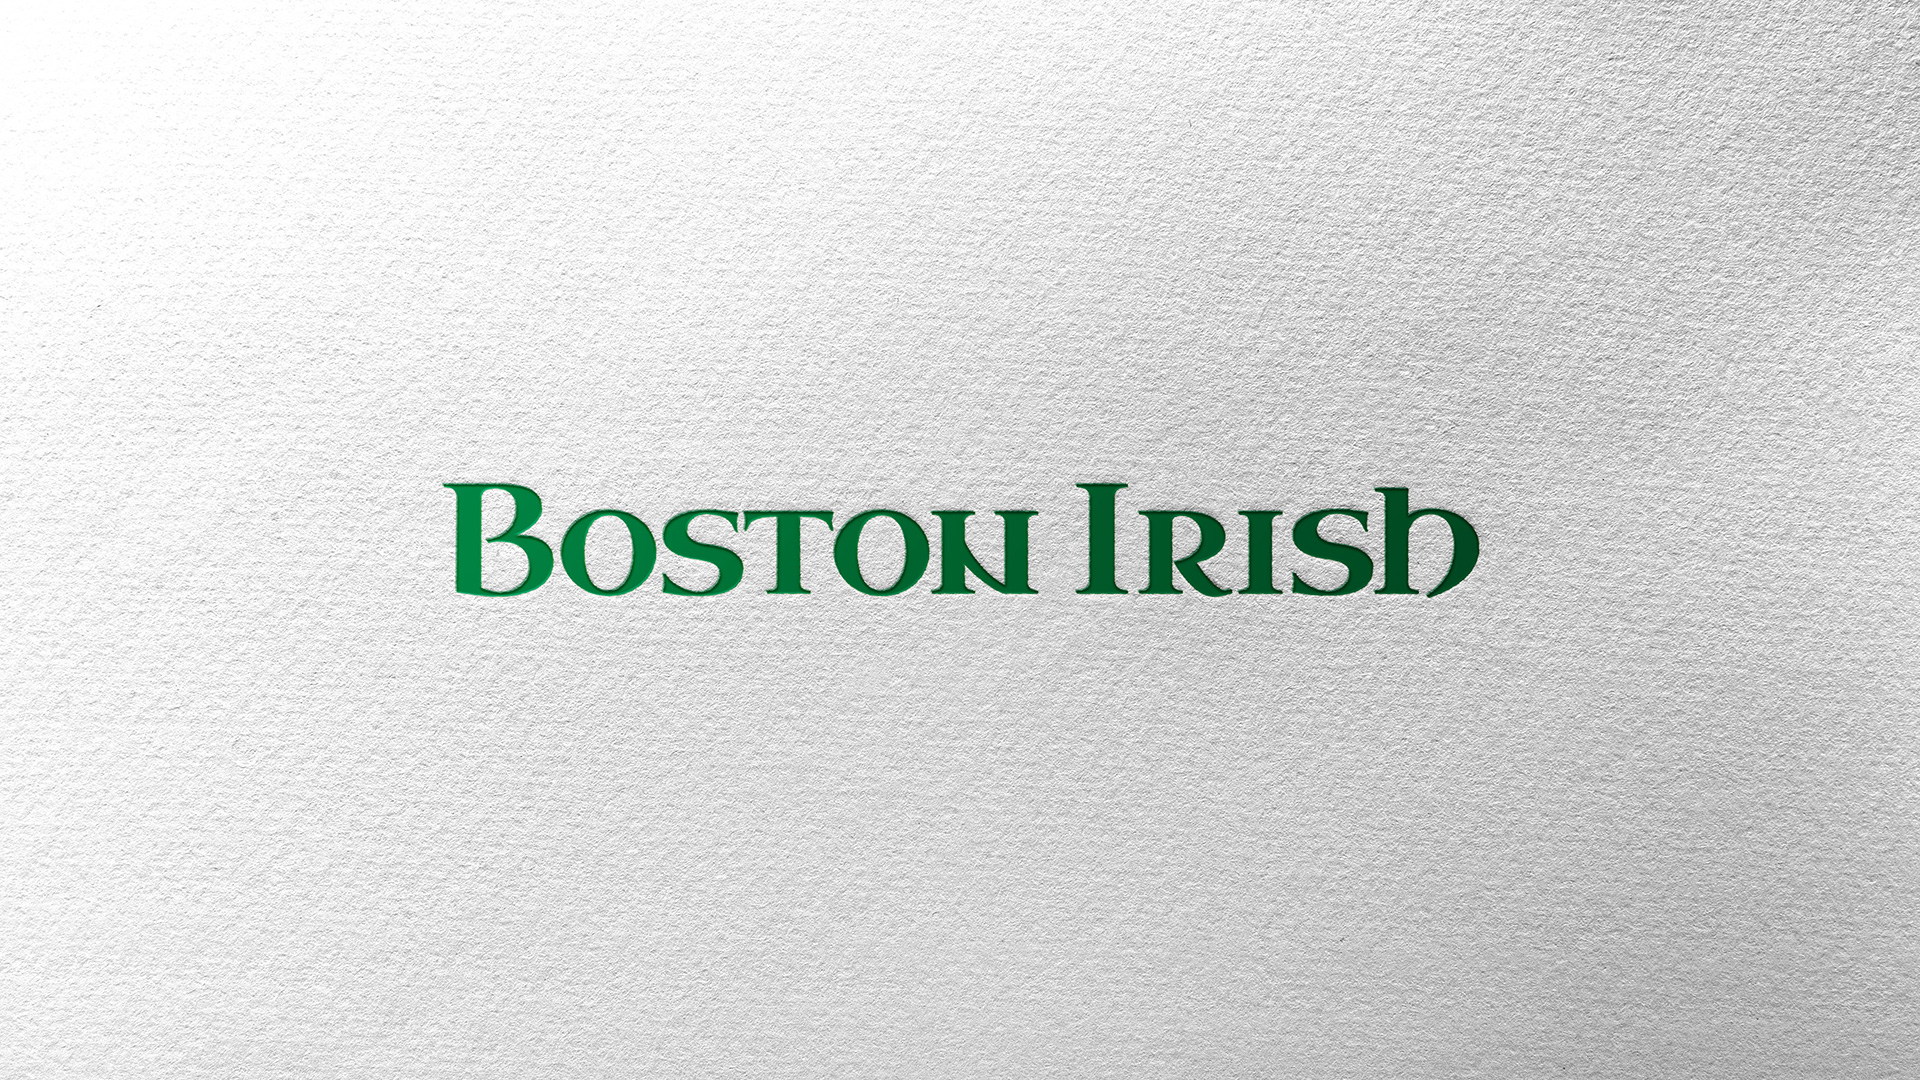 Boston-Irish-1.jpg